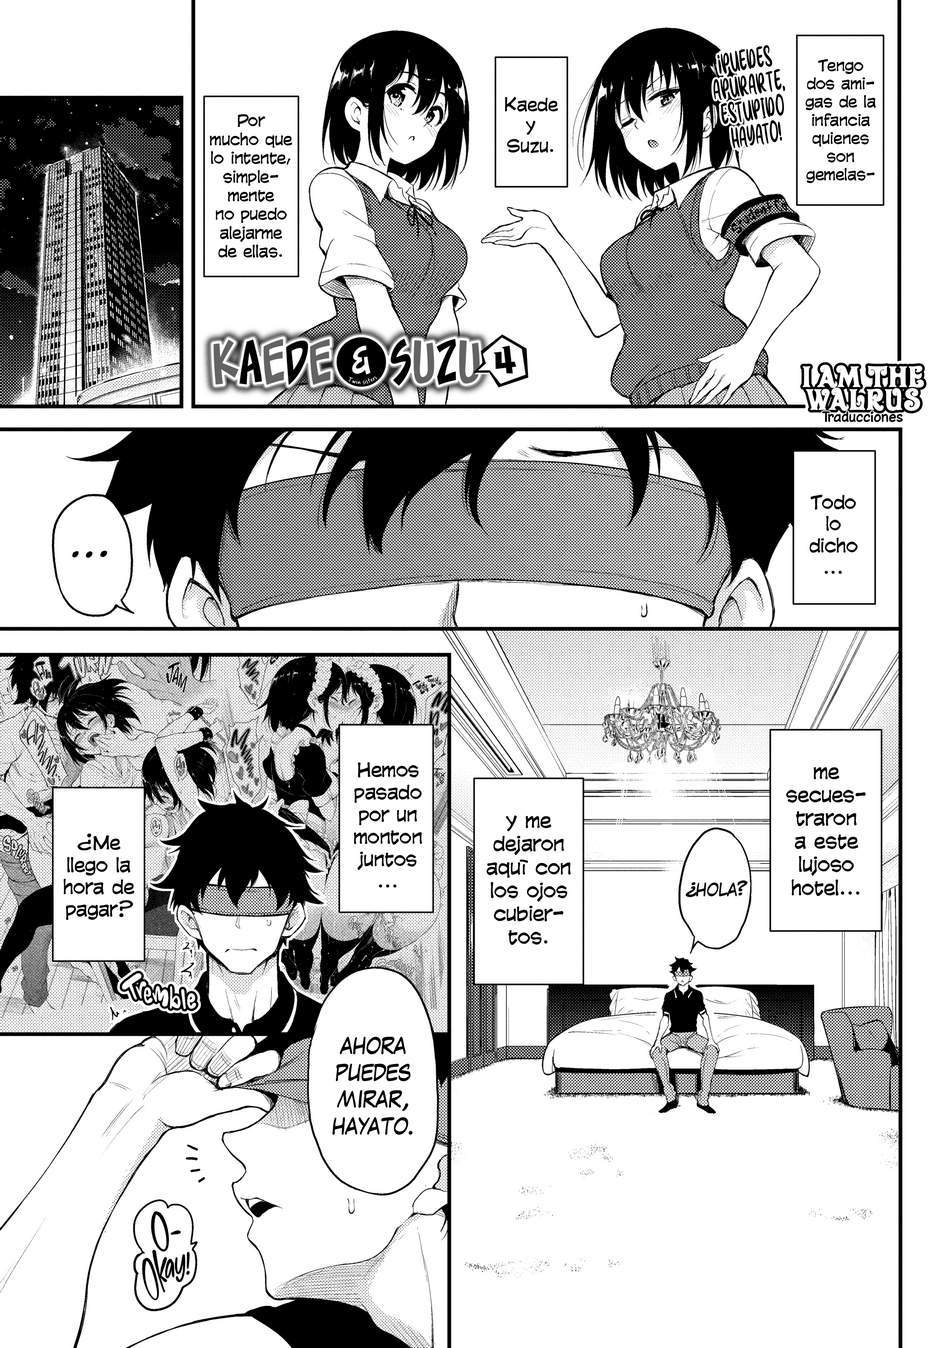 Kaede y Suzu #4 - Page #1